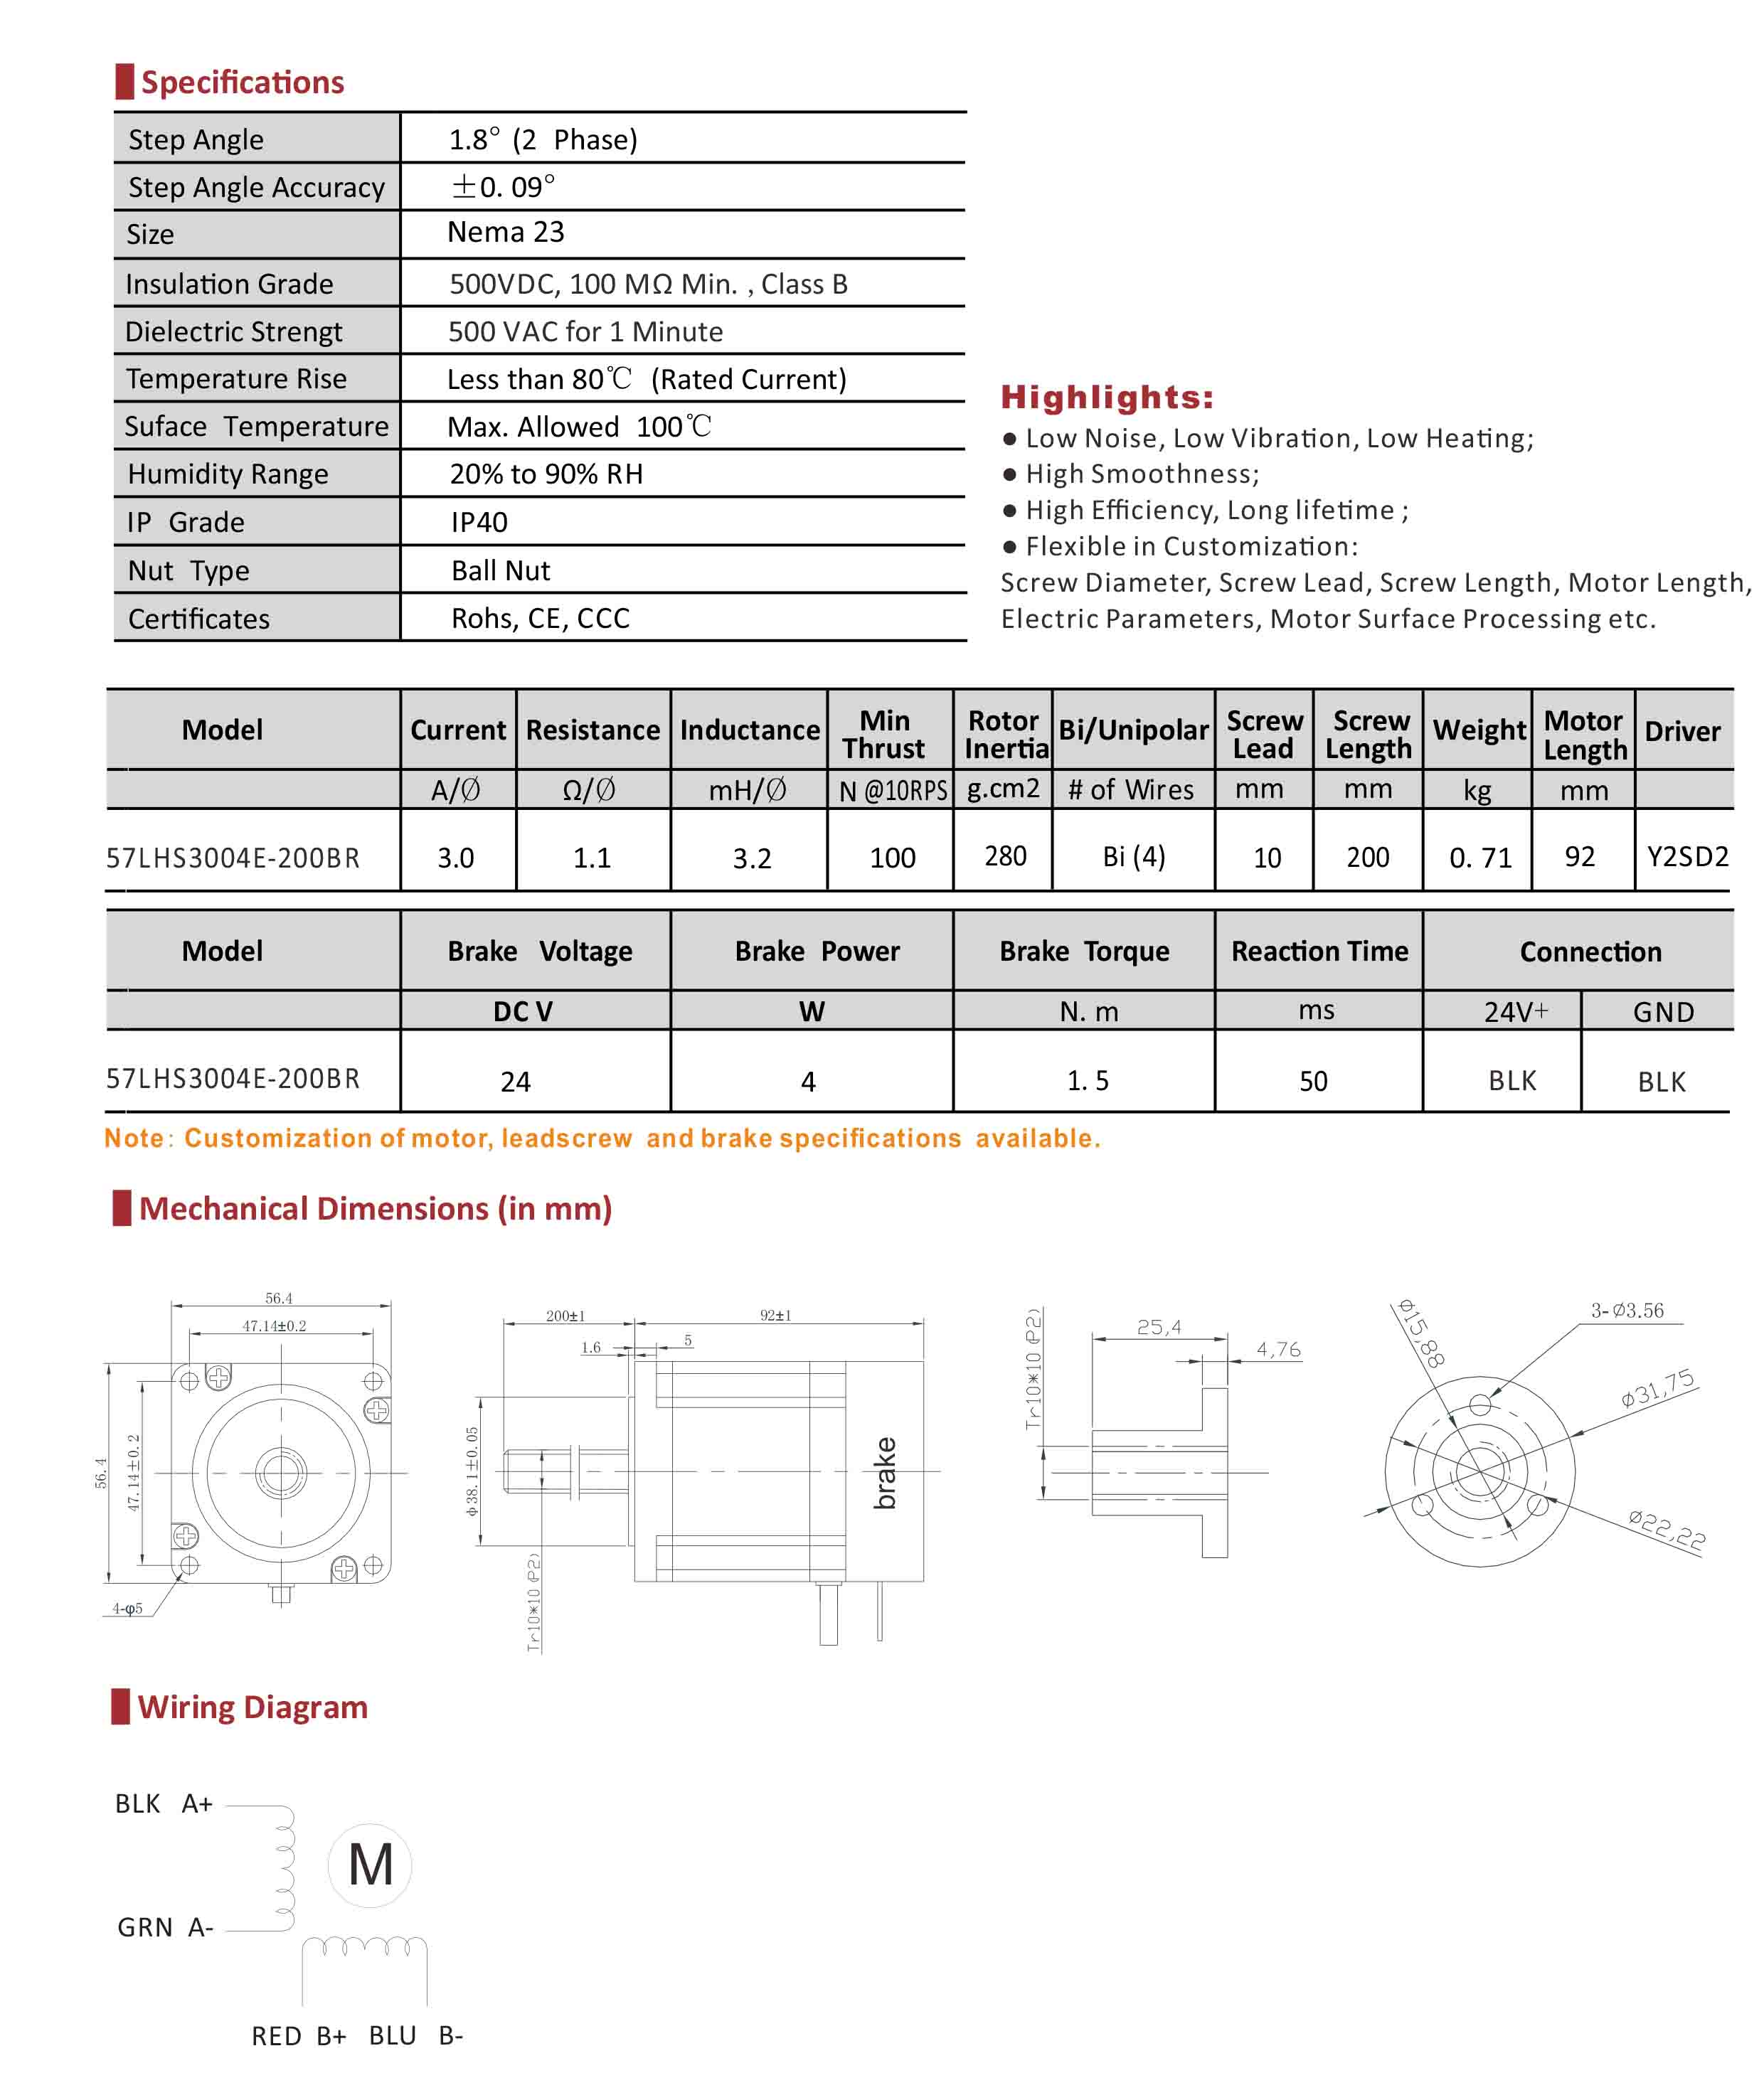 57LHS3004E-200BR Hybrid Linear Stepper Motor with Brake Data Sheet.jpg